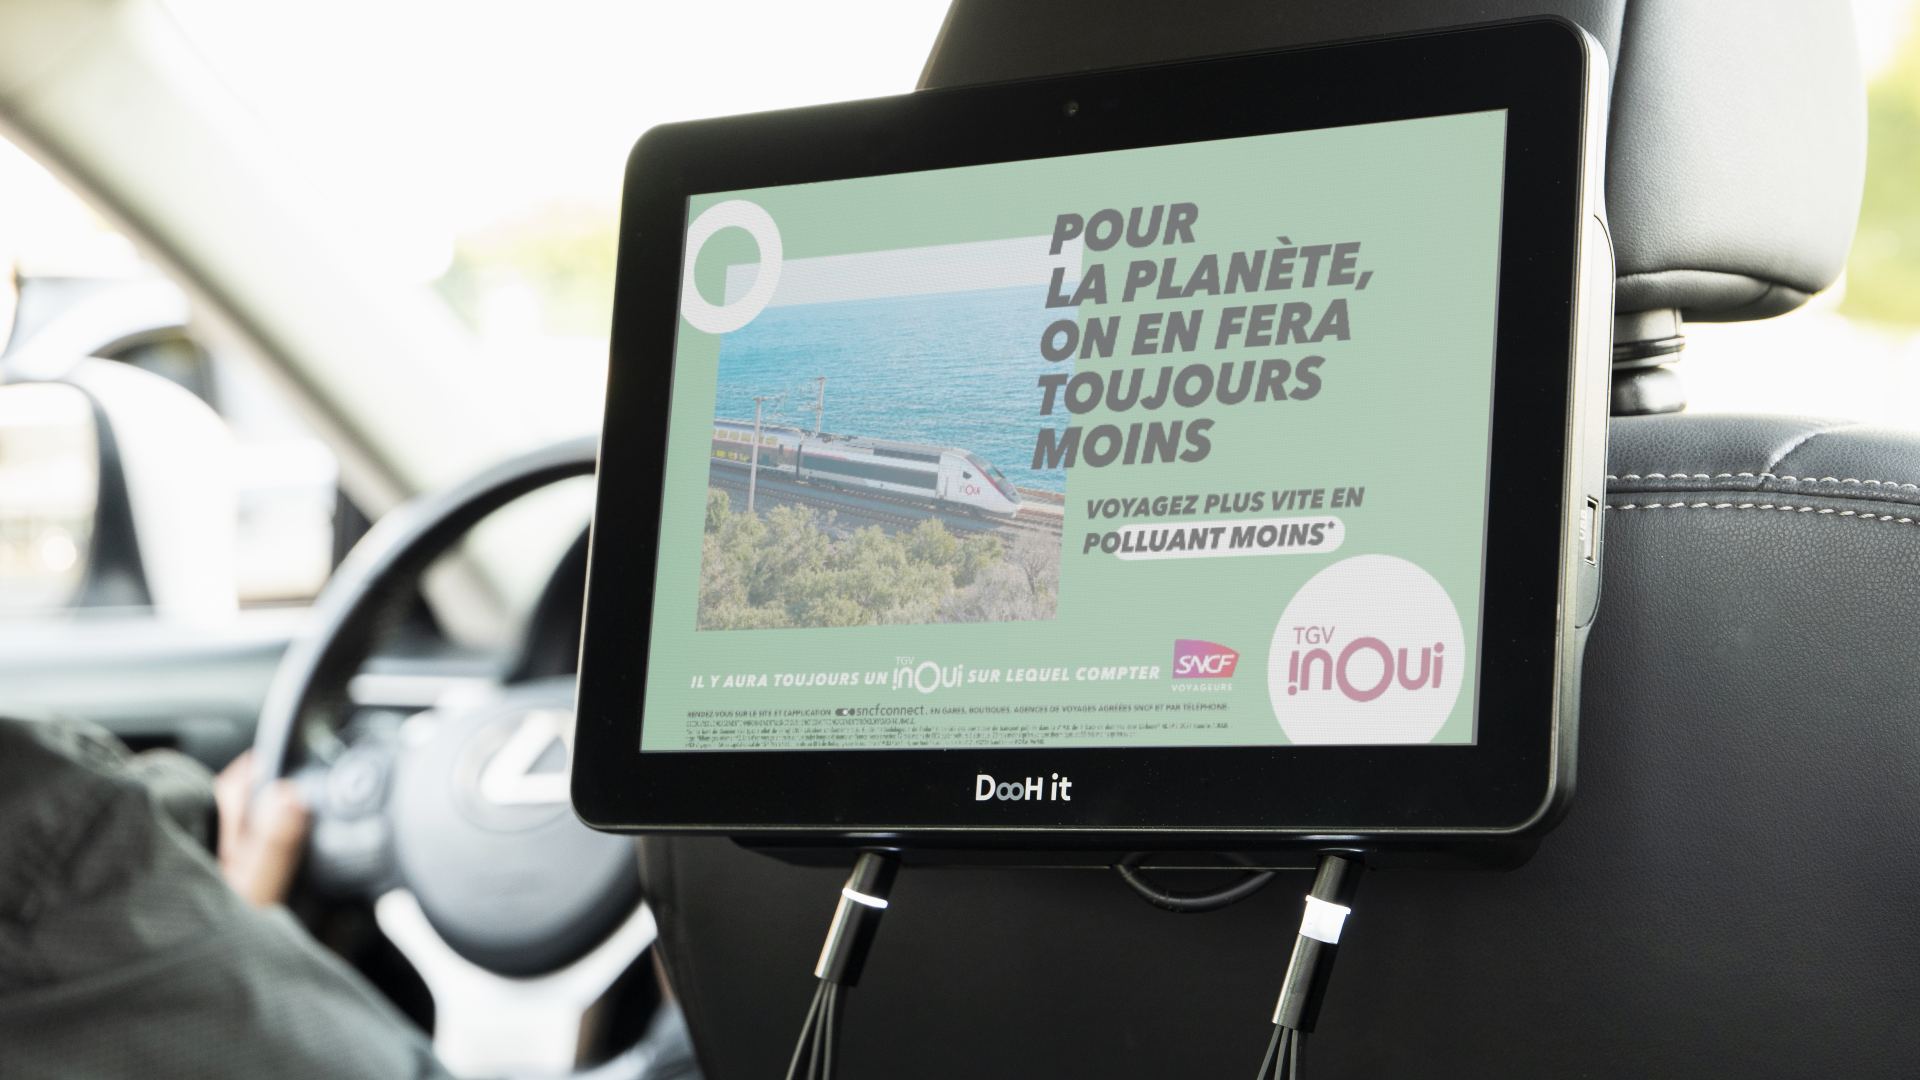 <strong>Par le biais de son média DigiCab, DooH it permet la diffusion de messages “green”, avec une campagne signée TGV INOUI.</strong>